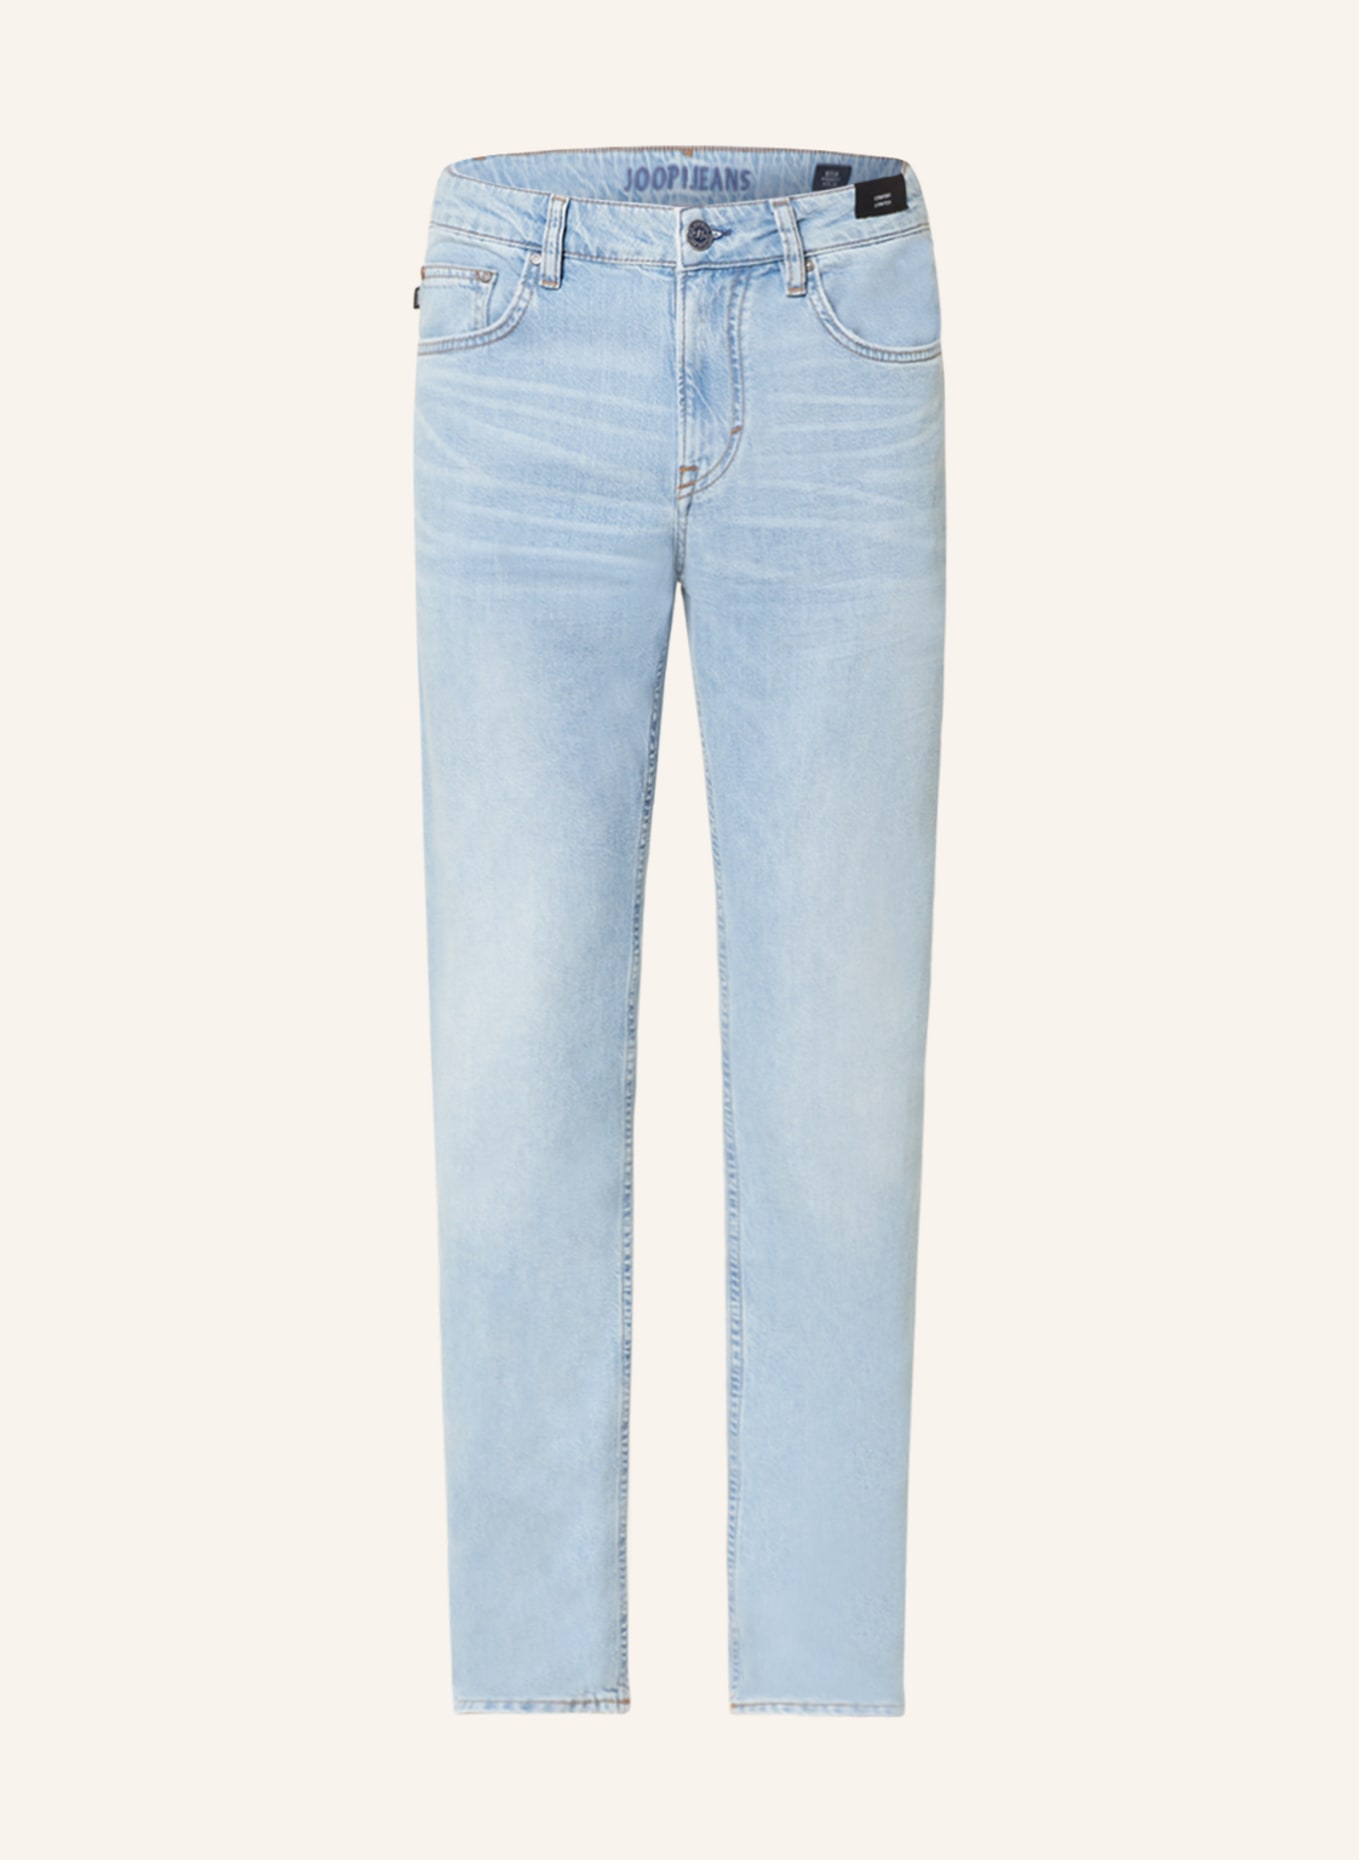 JOOP! JEANS Jeans MITCH modern fit, Color: 451 Lt/Pastel Blue             451 (Image 1)